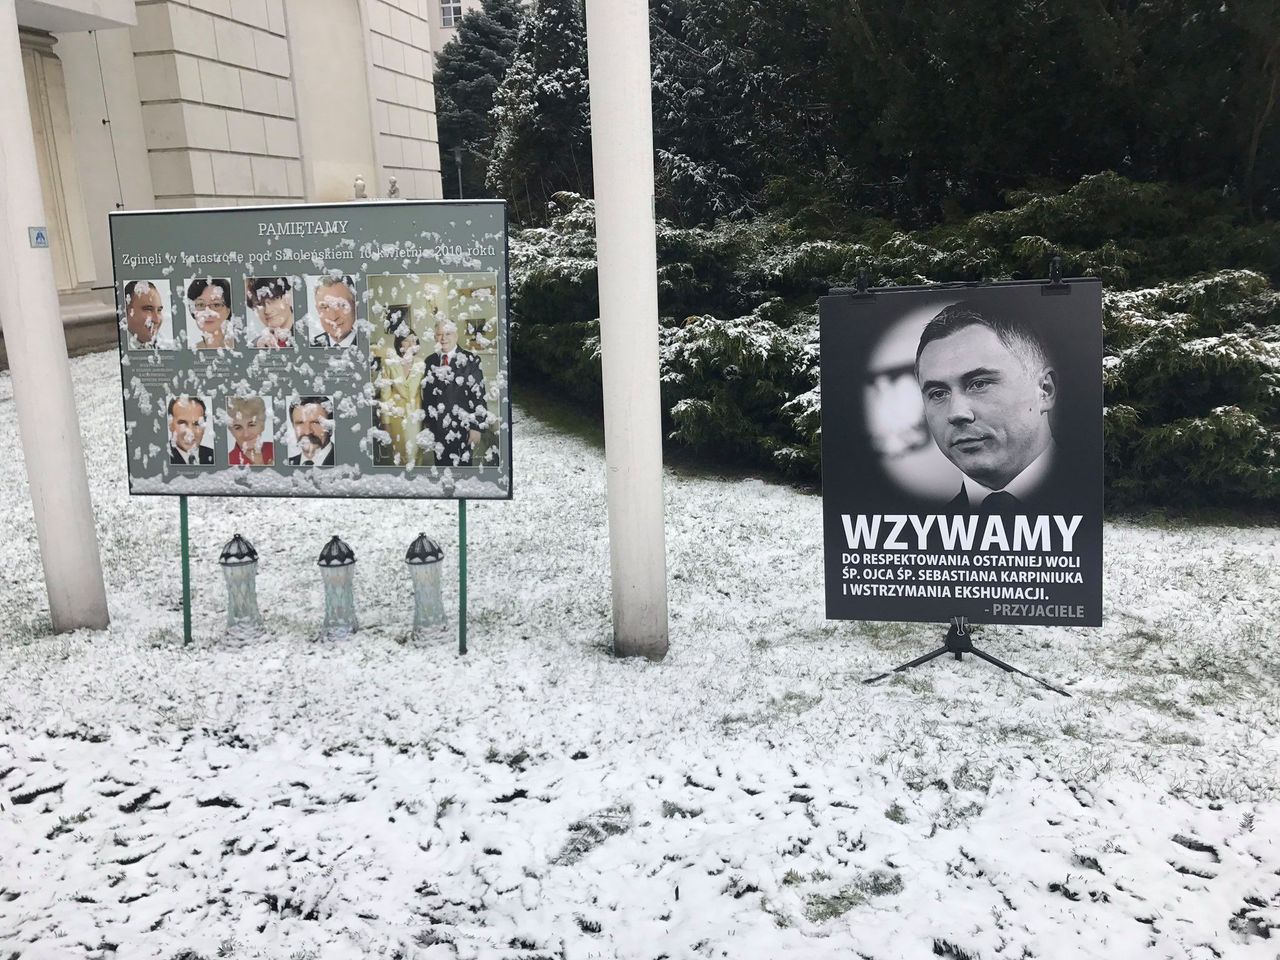 Mówią "nie" dla ekshumacji posła PO. Postawili tablicę, usunęła ją Straż Marszałkowska